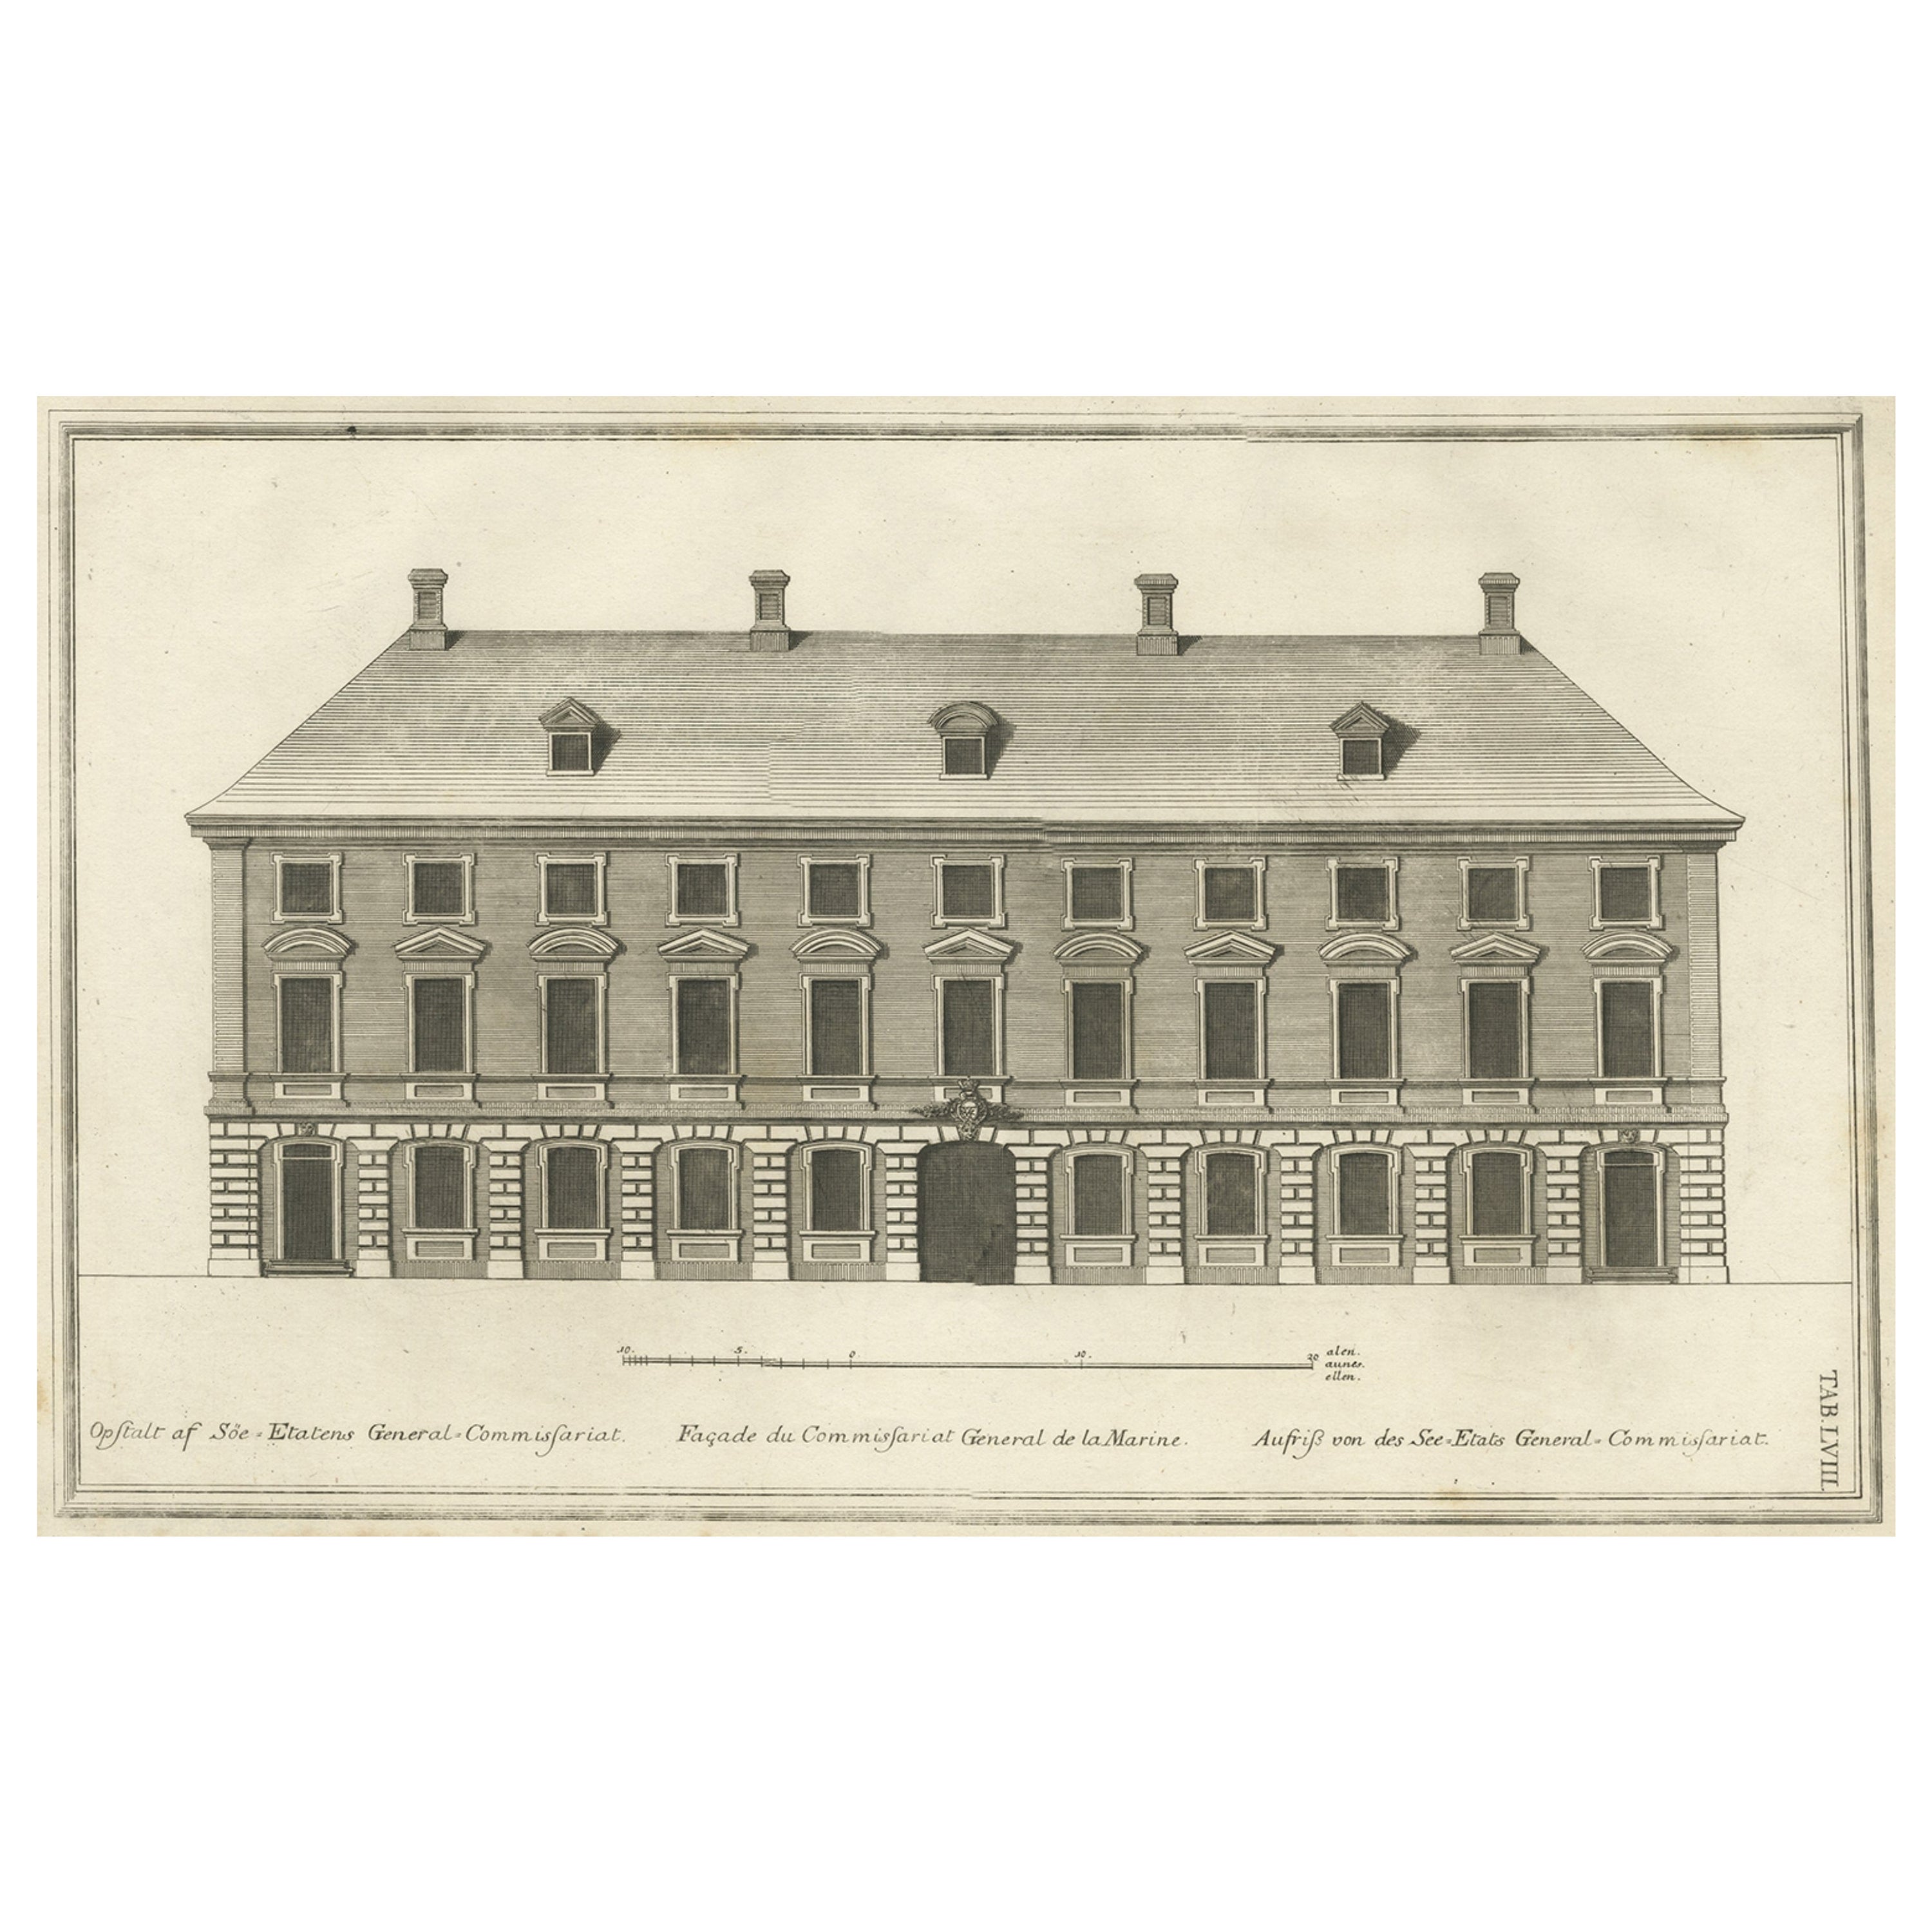 Antiker Druck eines maritimen Gebäudes in Kopenhagen in Dänemark, 1746